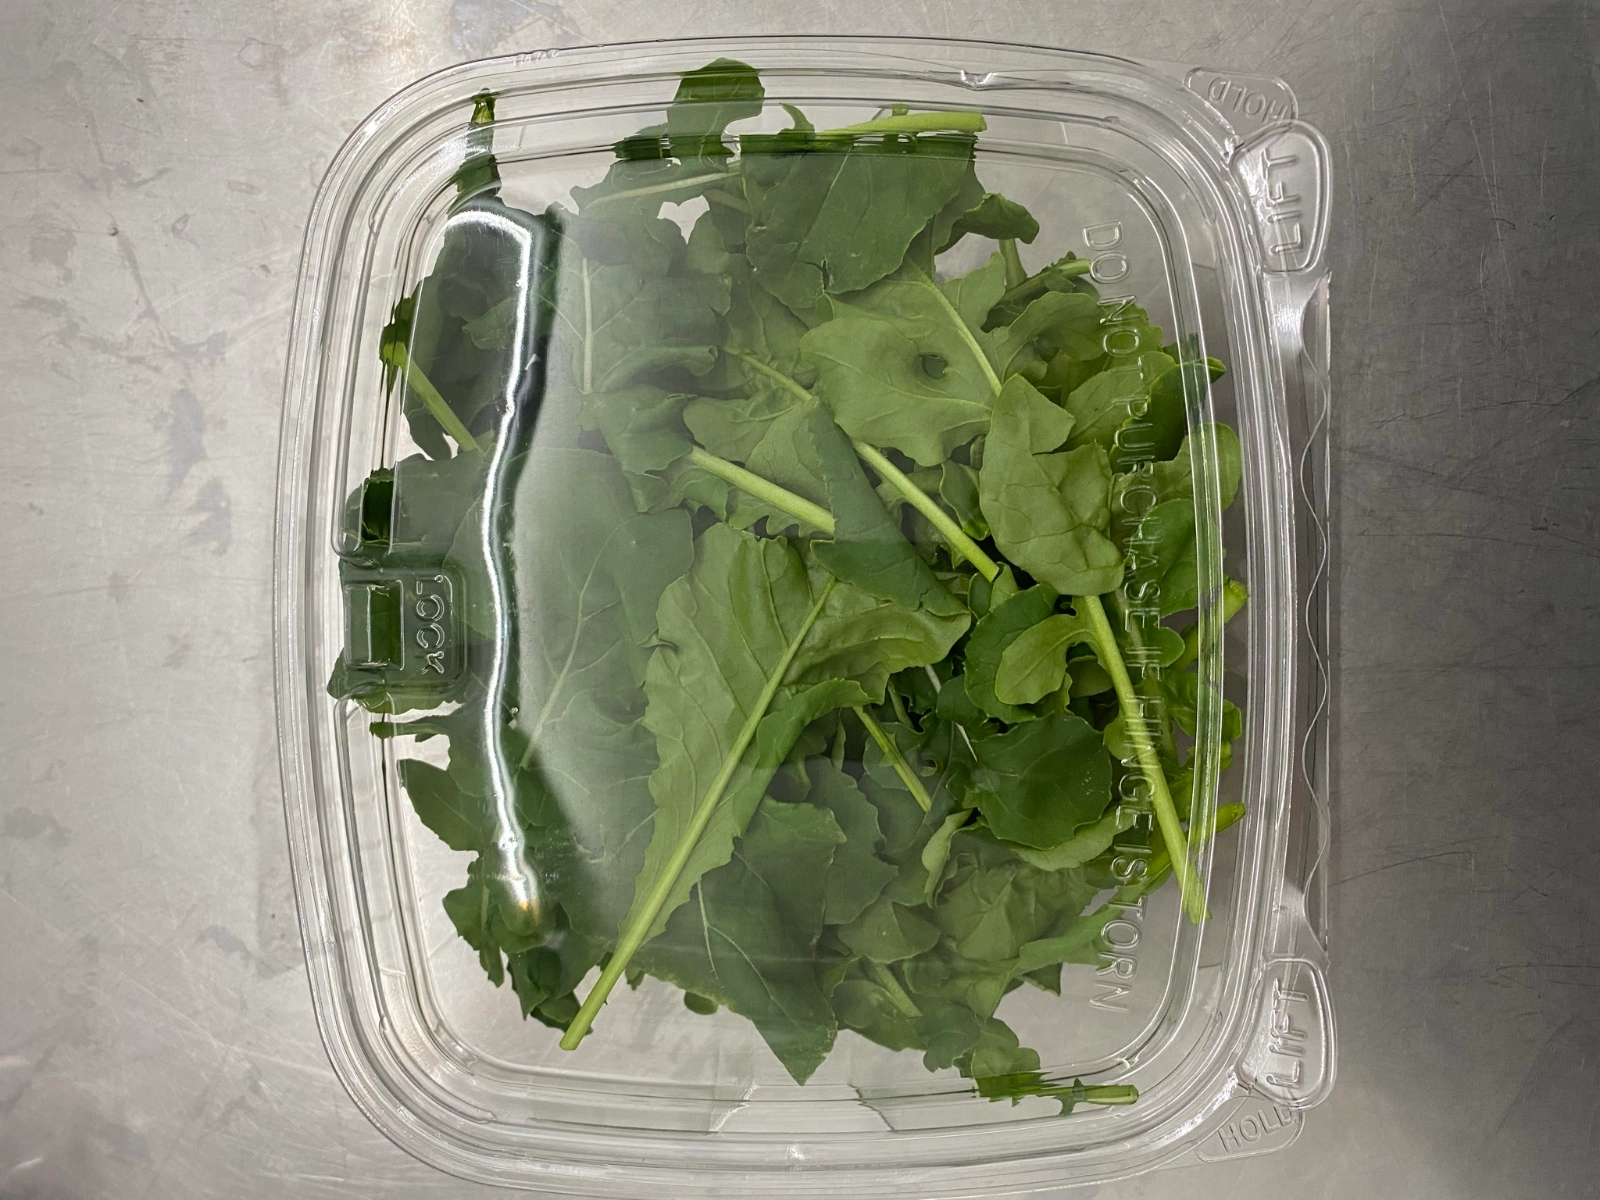 arugula-kale-fresh-salad-blend